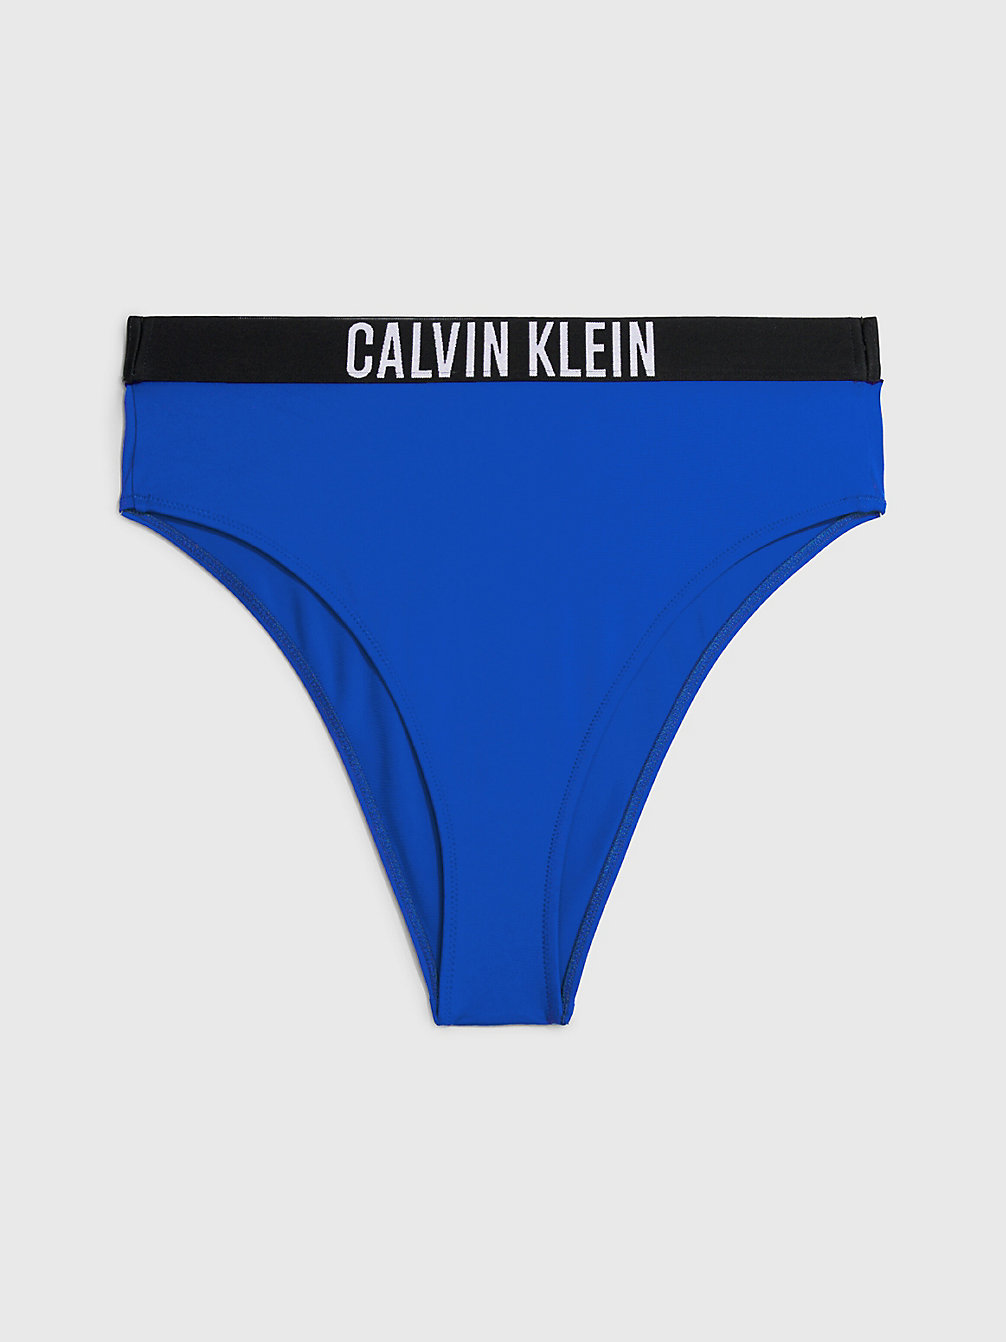 BISTRO BLUE Bas De Bikini Taille Haute - Intense Power undefined femmes Calvin Klein